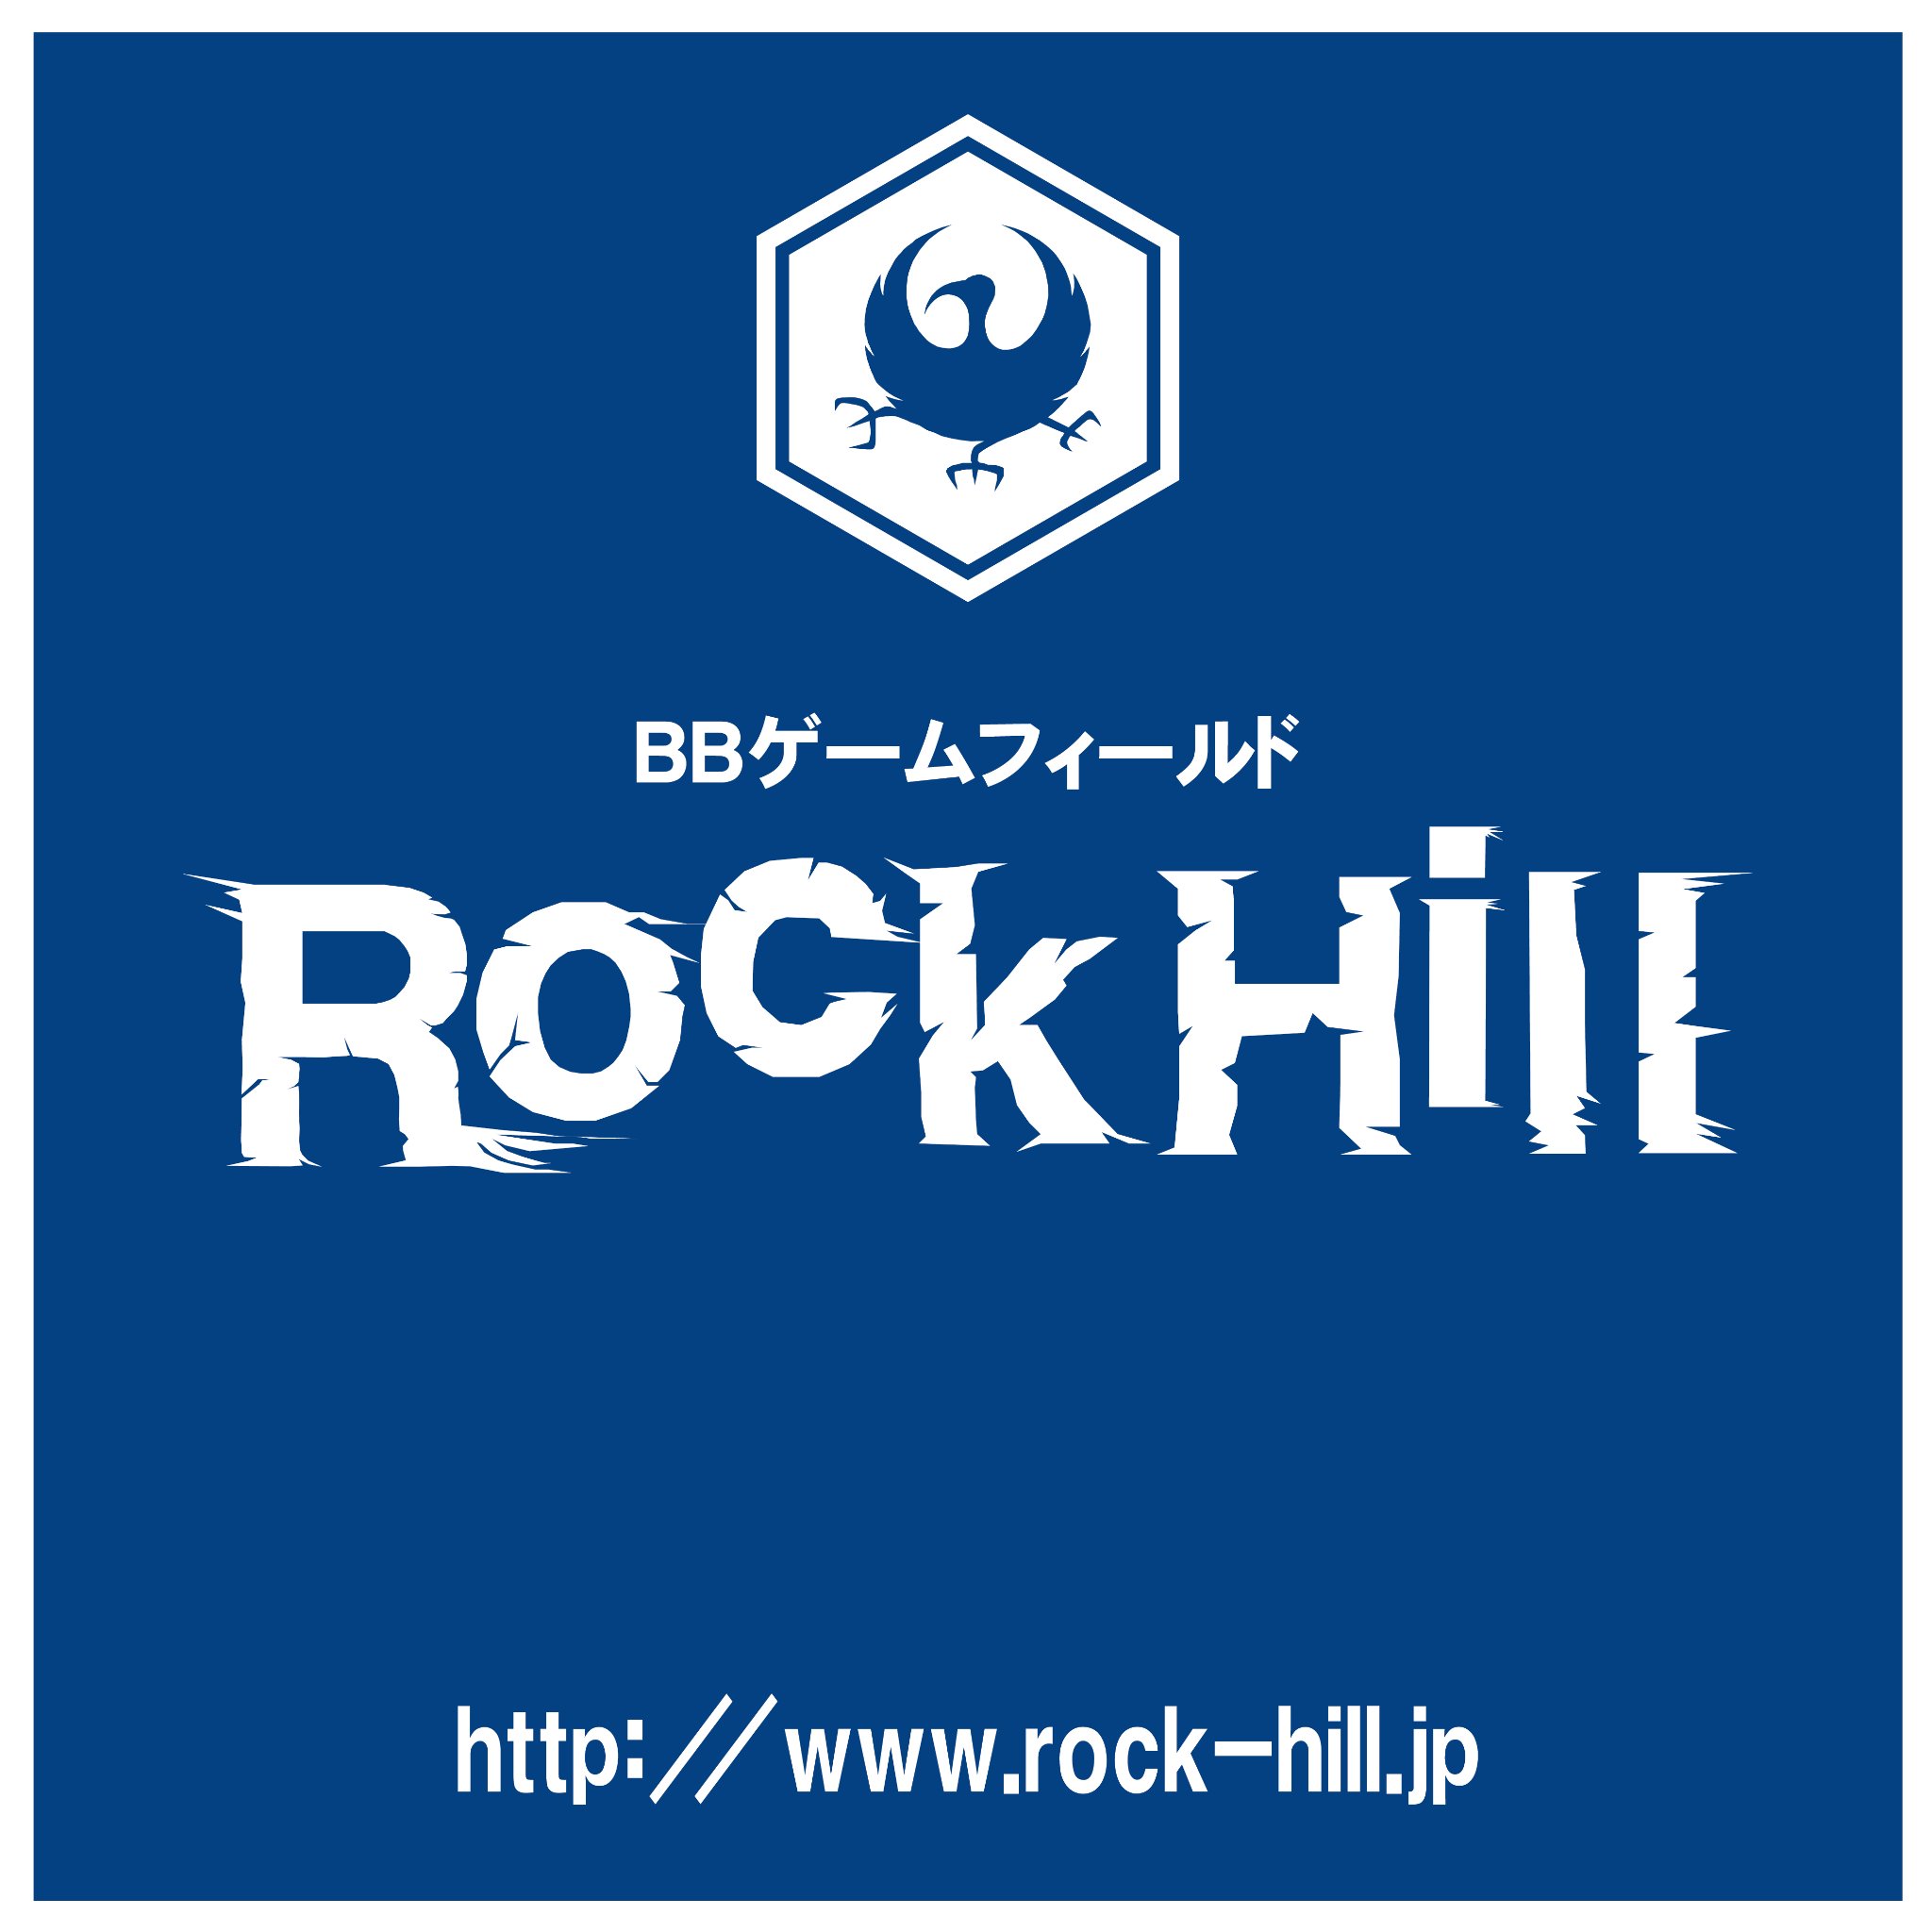 BBゲームフィールドRockHillの公式アカウント  千葉県白井市にありますサバゲフィールドです。 FaceBookページ https://t.co/rStMuDJITn
定例会＆貸切ゲームの写真はFaceBookページの写真の所にアップしておりますのでご覧下さいませ